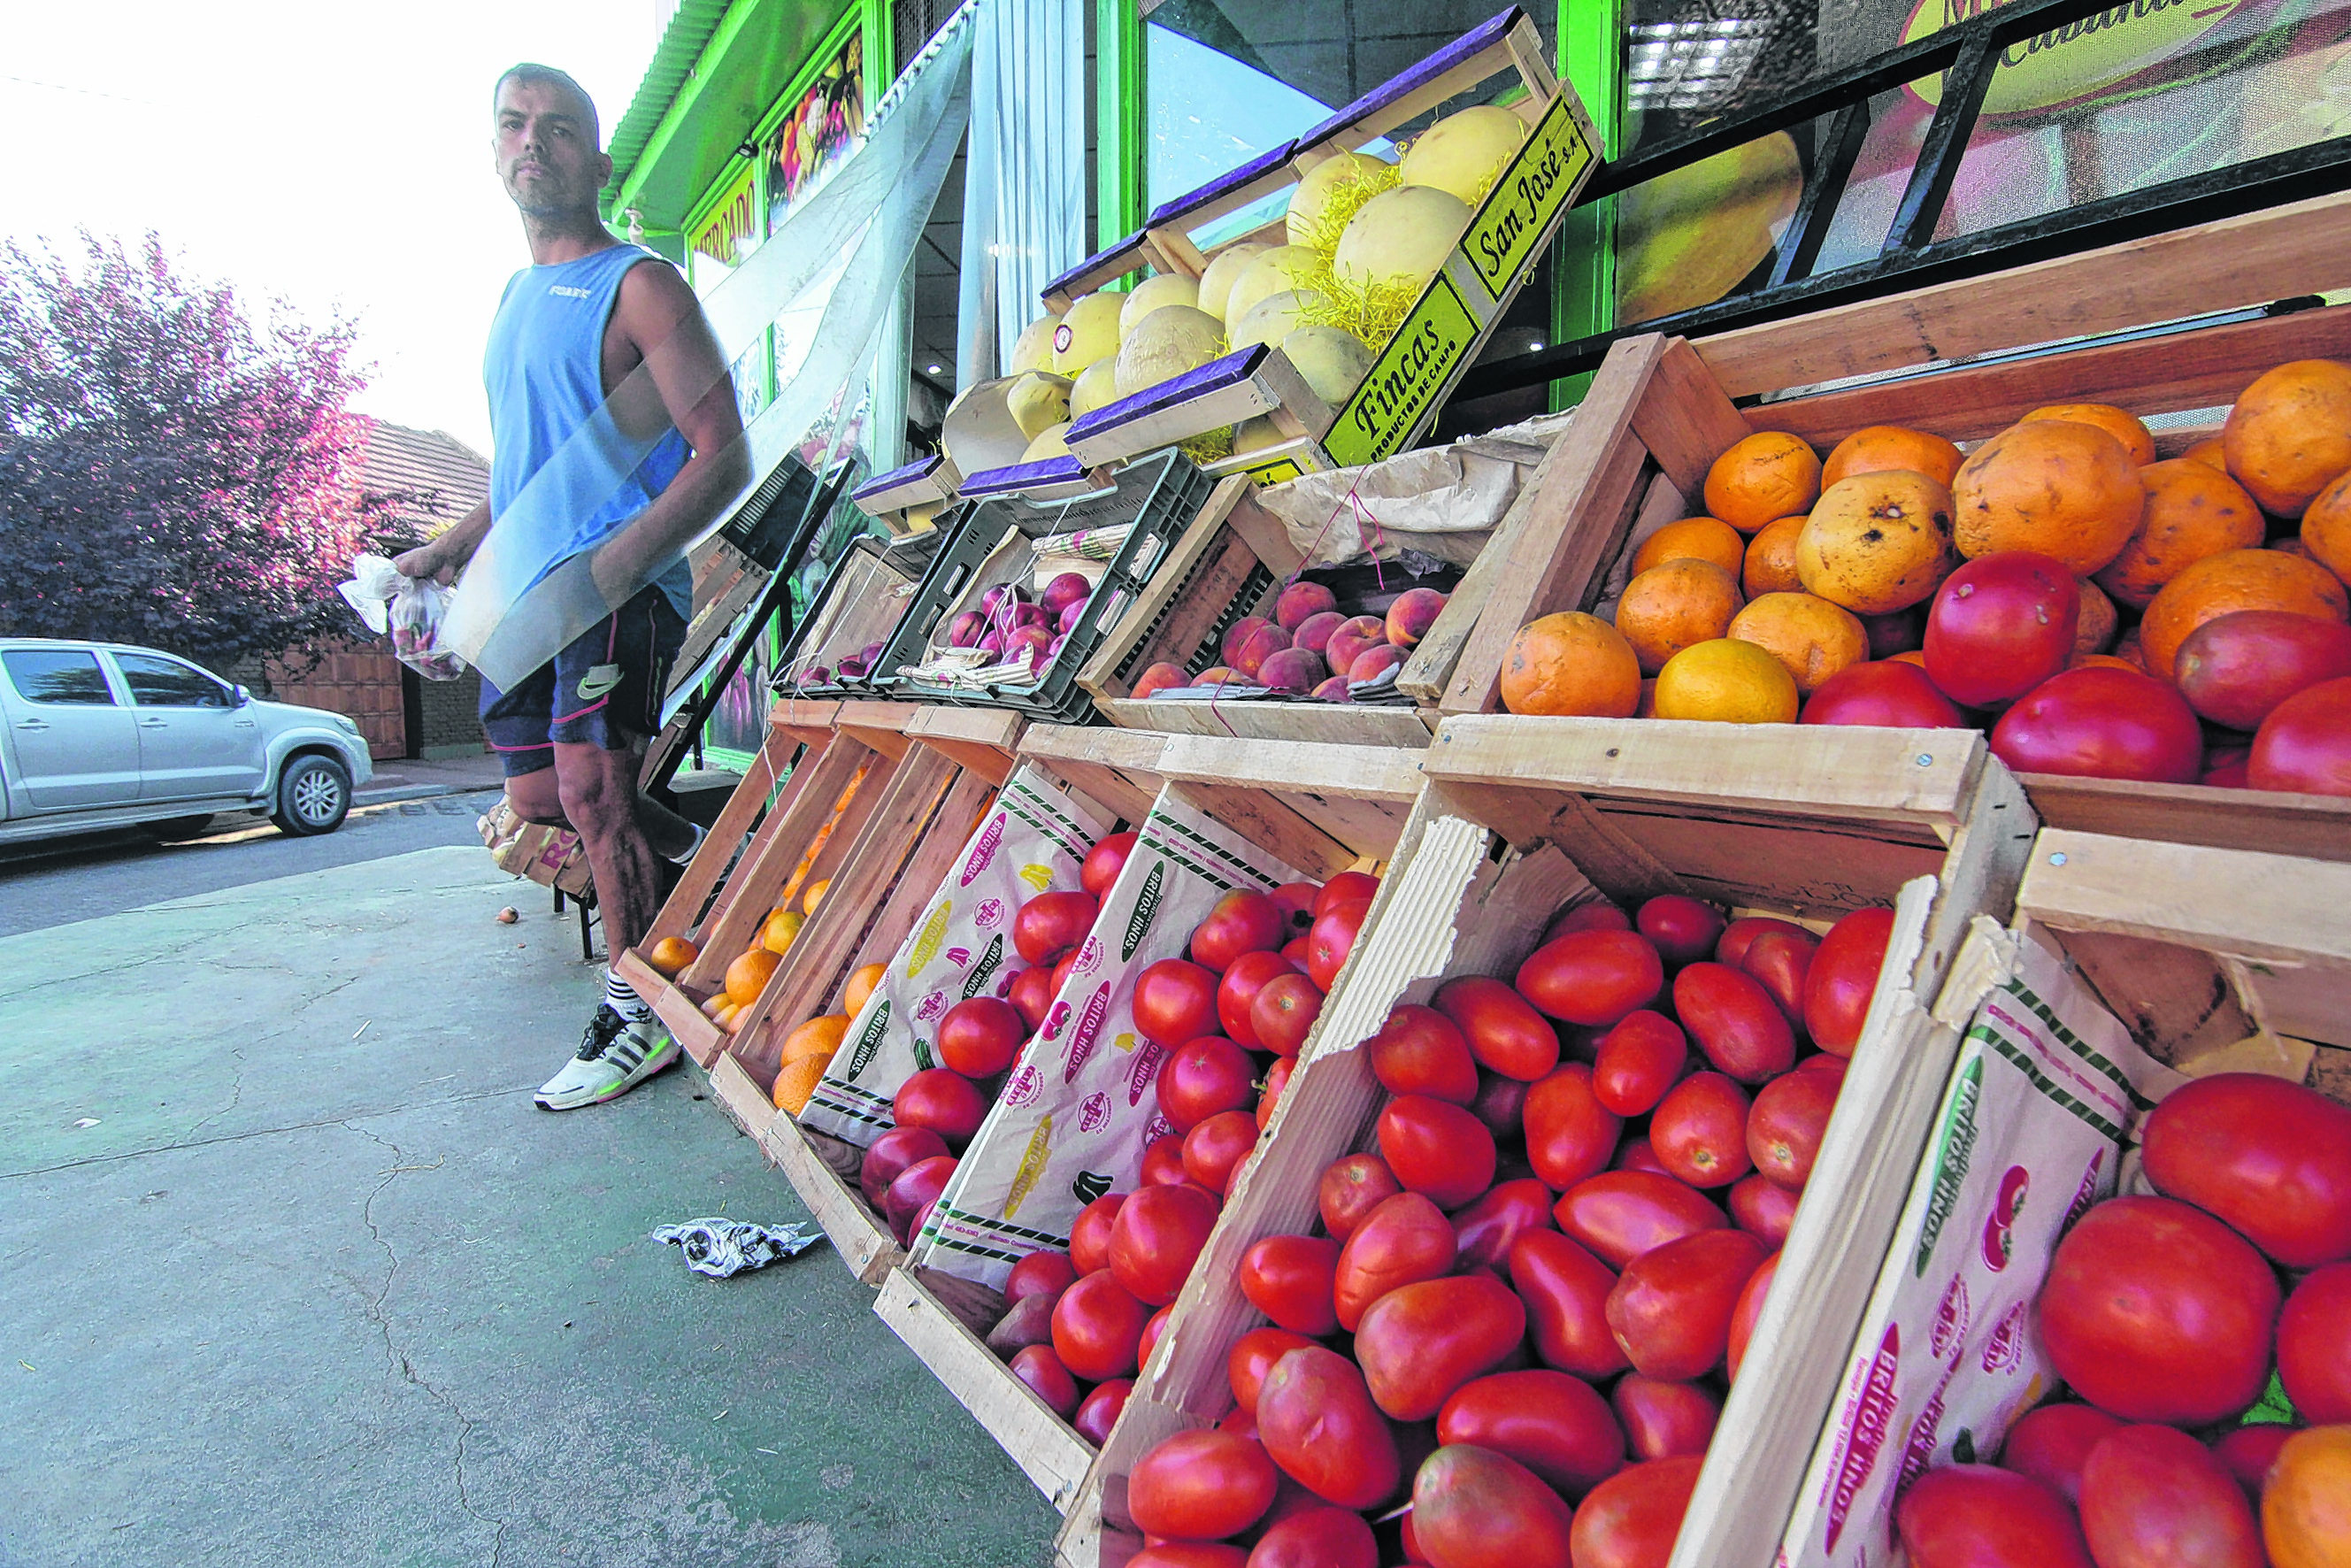 La adquisición de los productos de verdulería y frutas se hizo cada vas más caro en la ciudad de Neuquén.